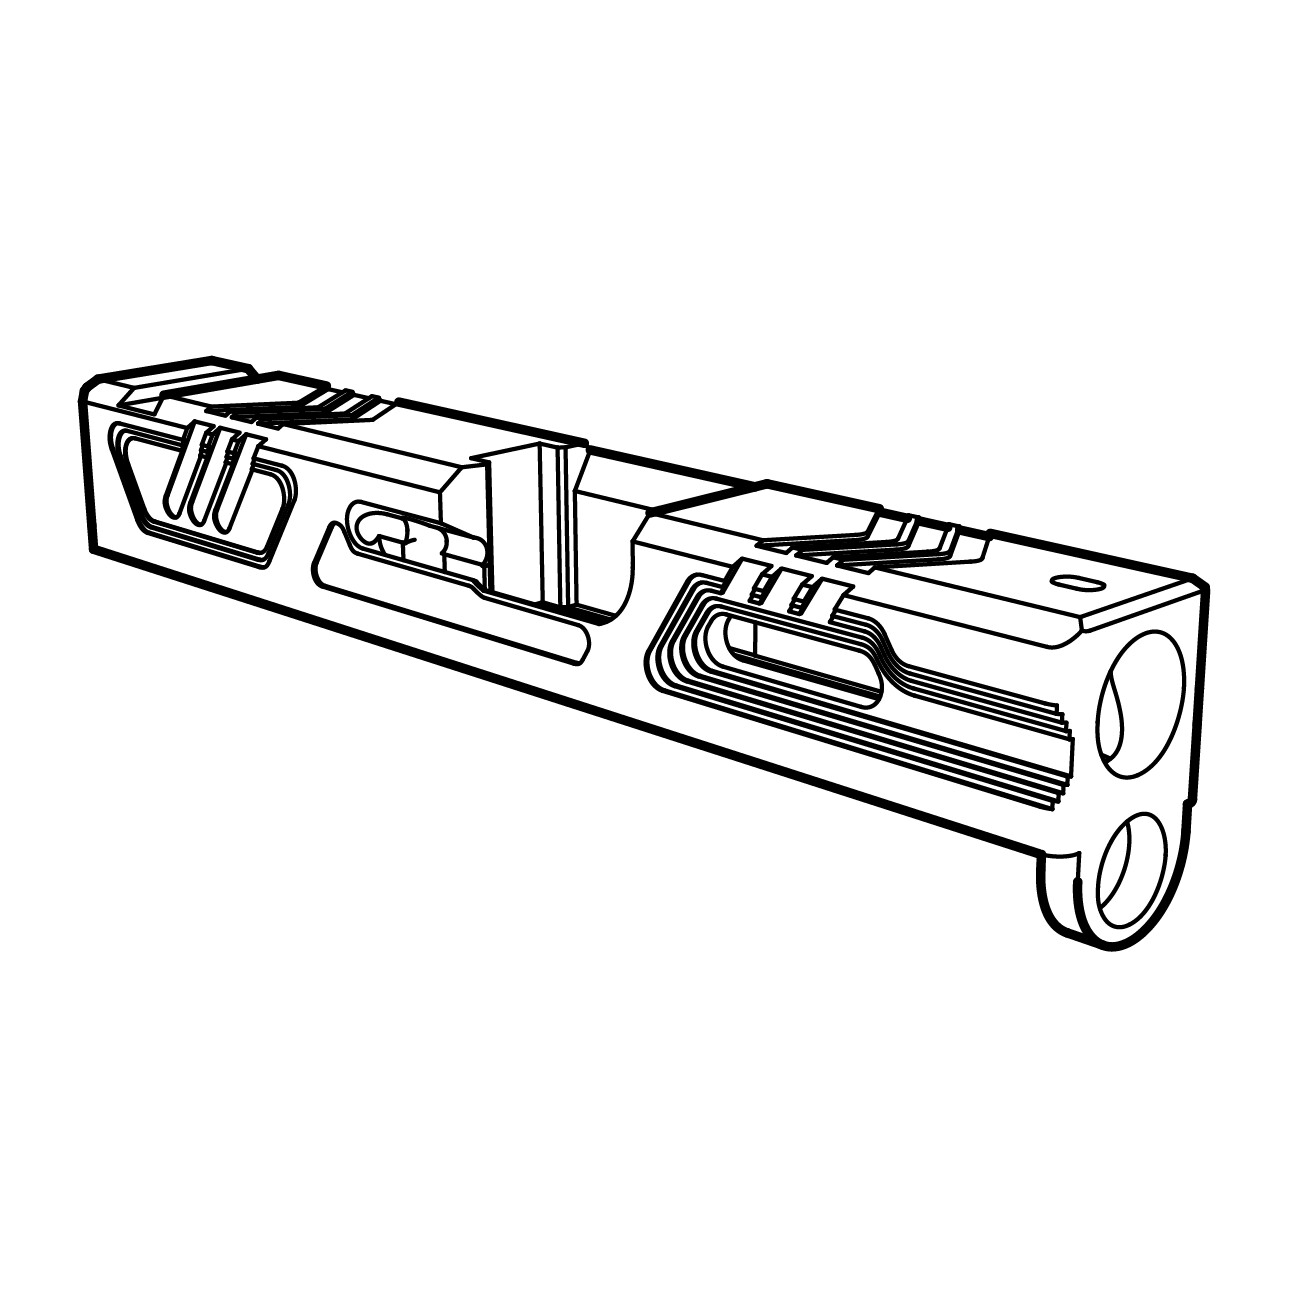 G43 Vector - Slide for Glock 43